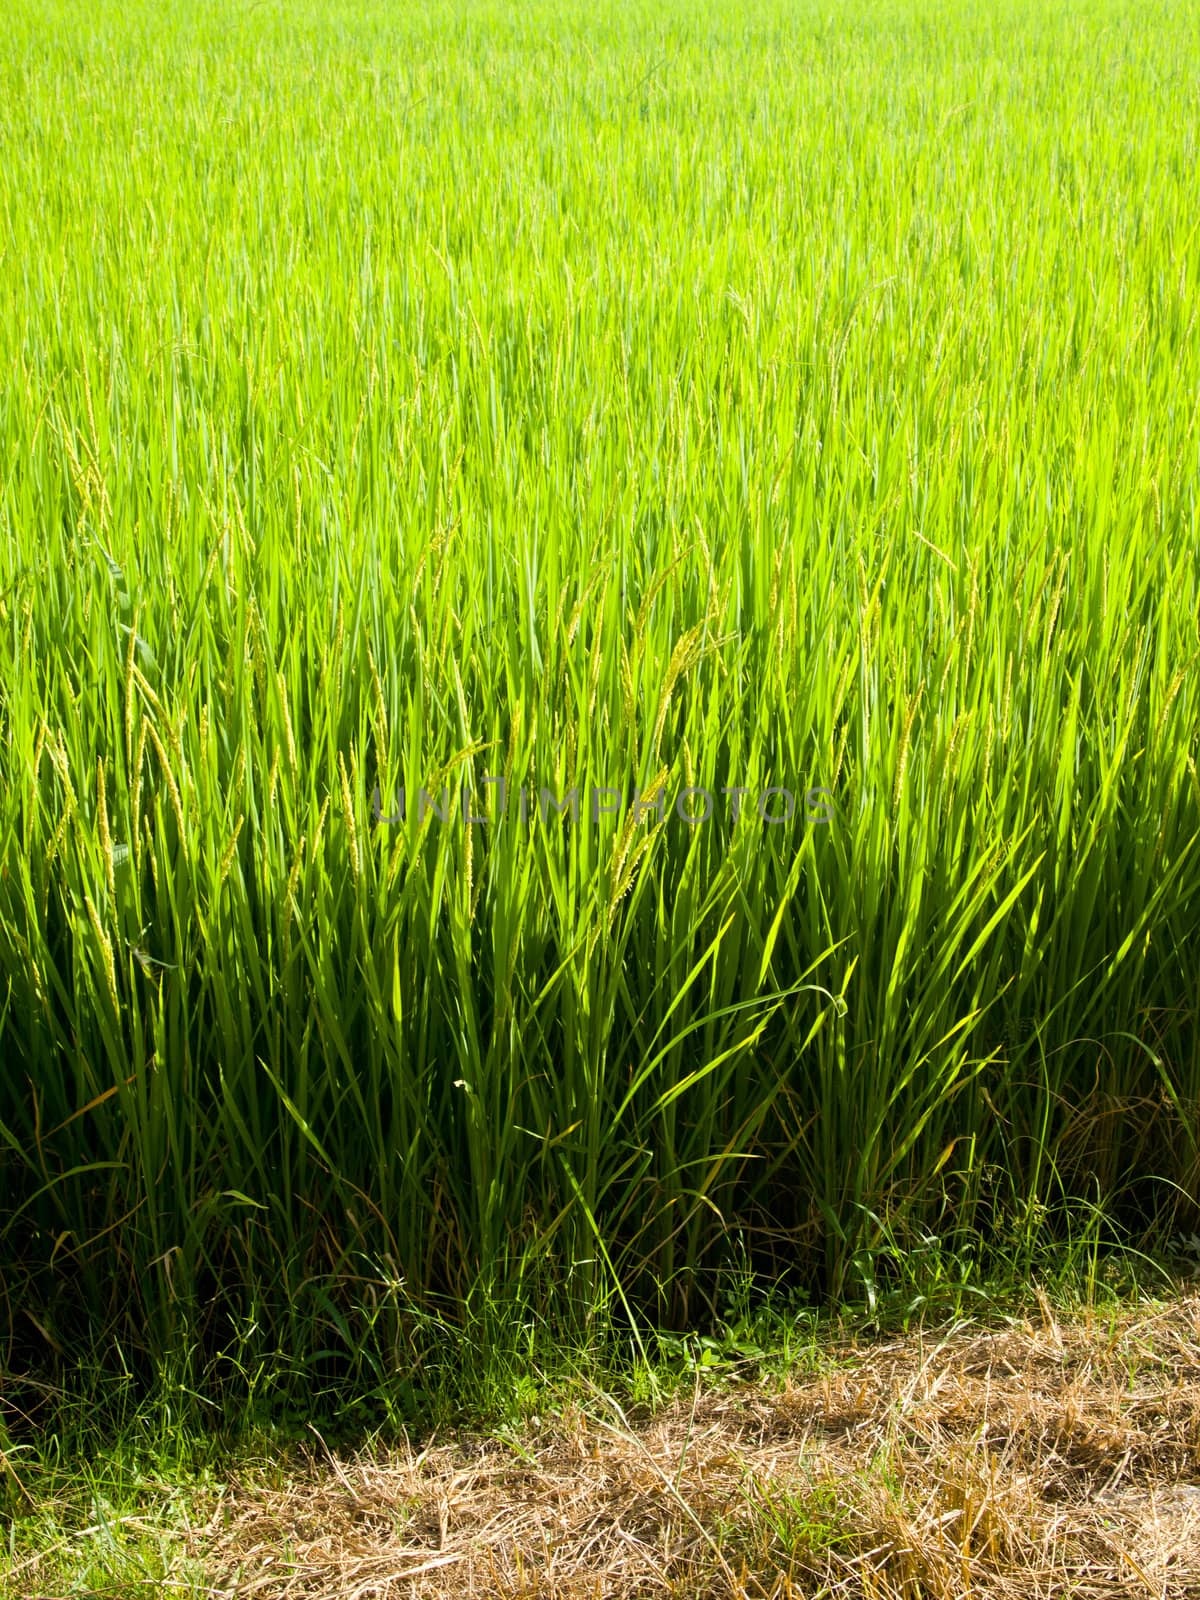 Green rice field2 by gjeerawut